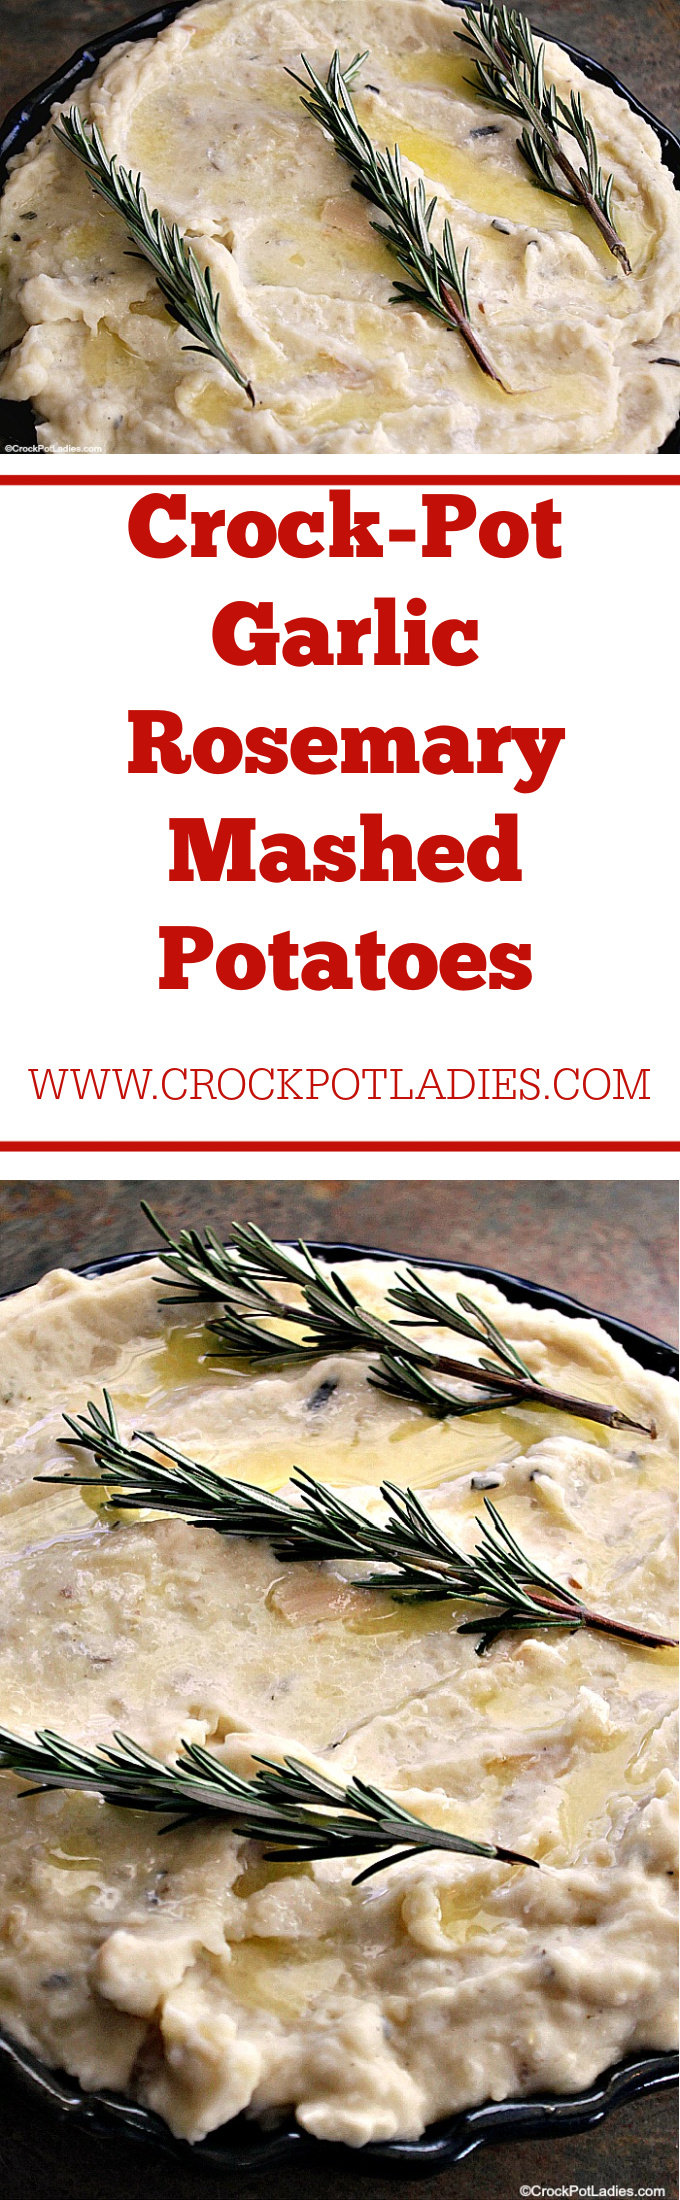 Crock-Pot Garlic Rosemary Mashed Potatoes